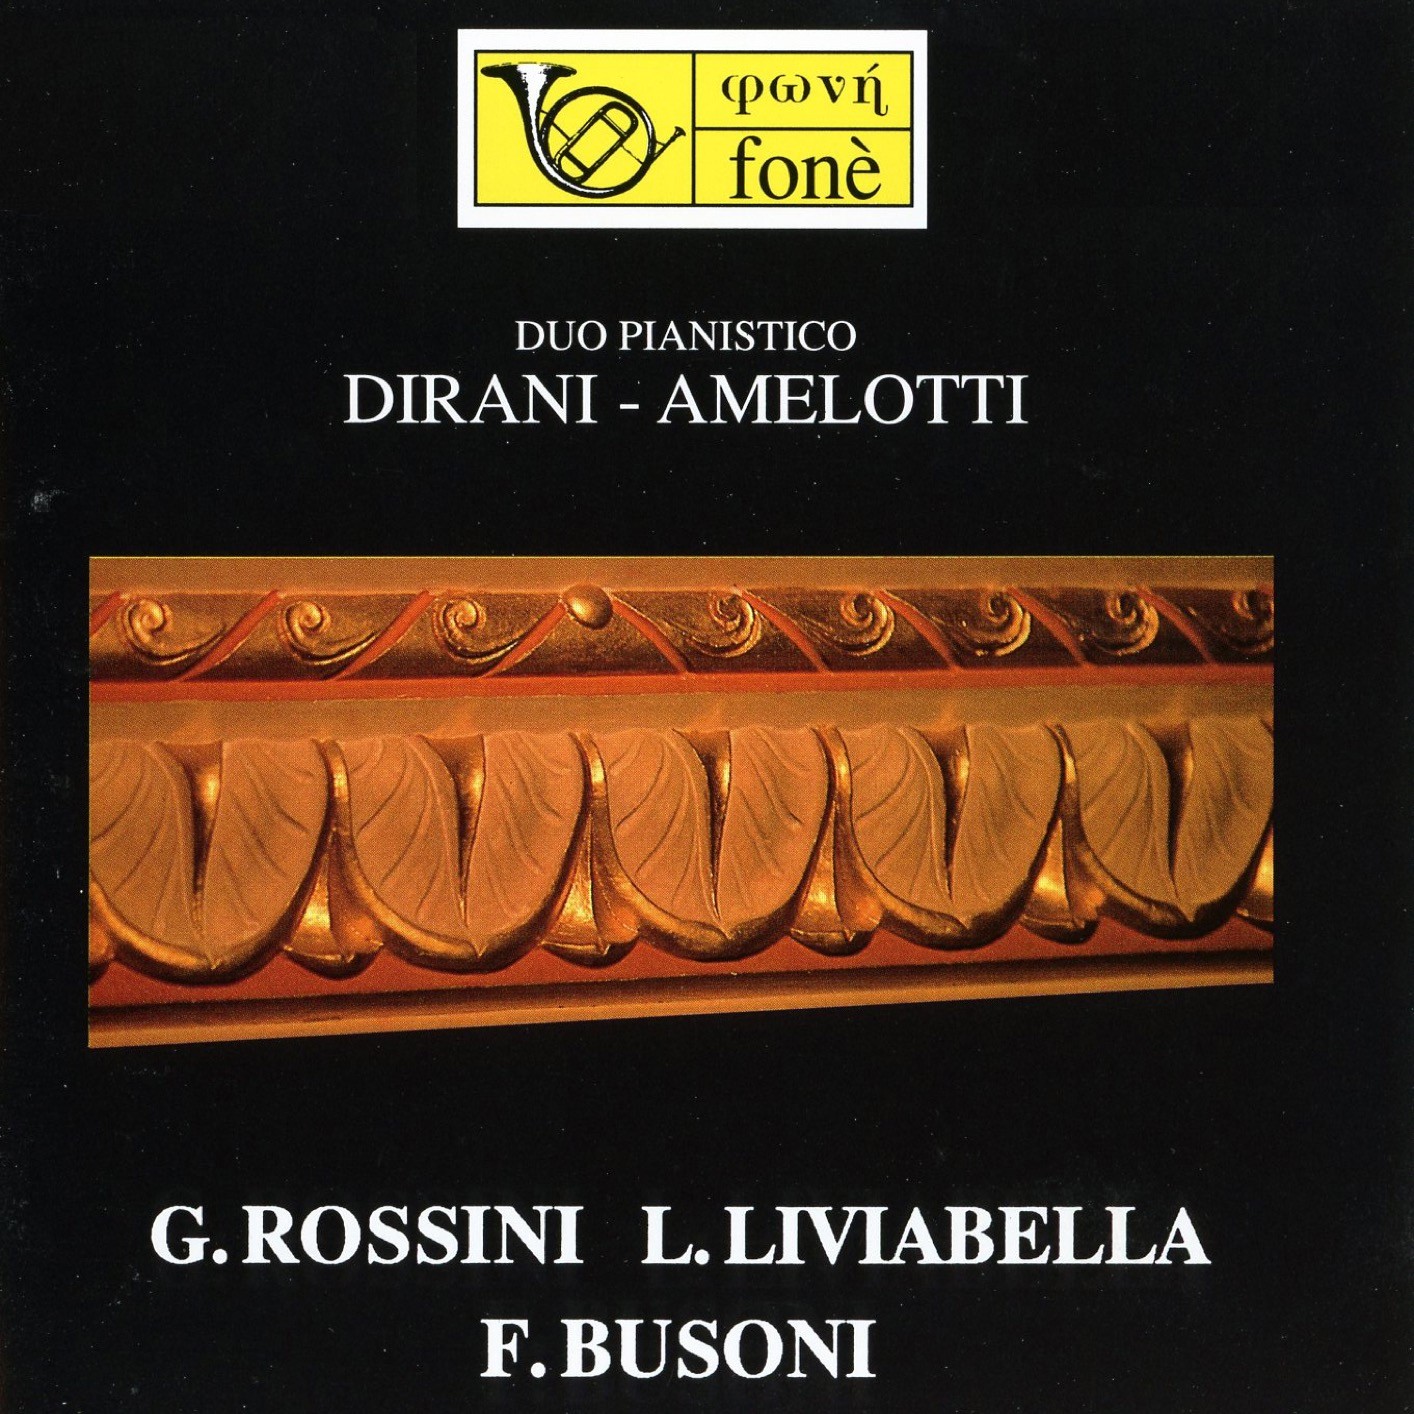 Paolo Dirani, Ferruccio Amelotti – Duo pianistico: Dirani Amelotti -G. Rossini, L. Liviabella, F. Busoni (Remastered) (1999/2023) [FLAC 24bit/48kHz]